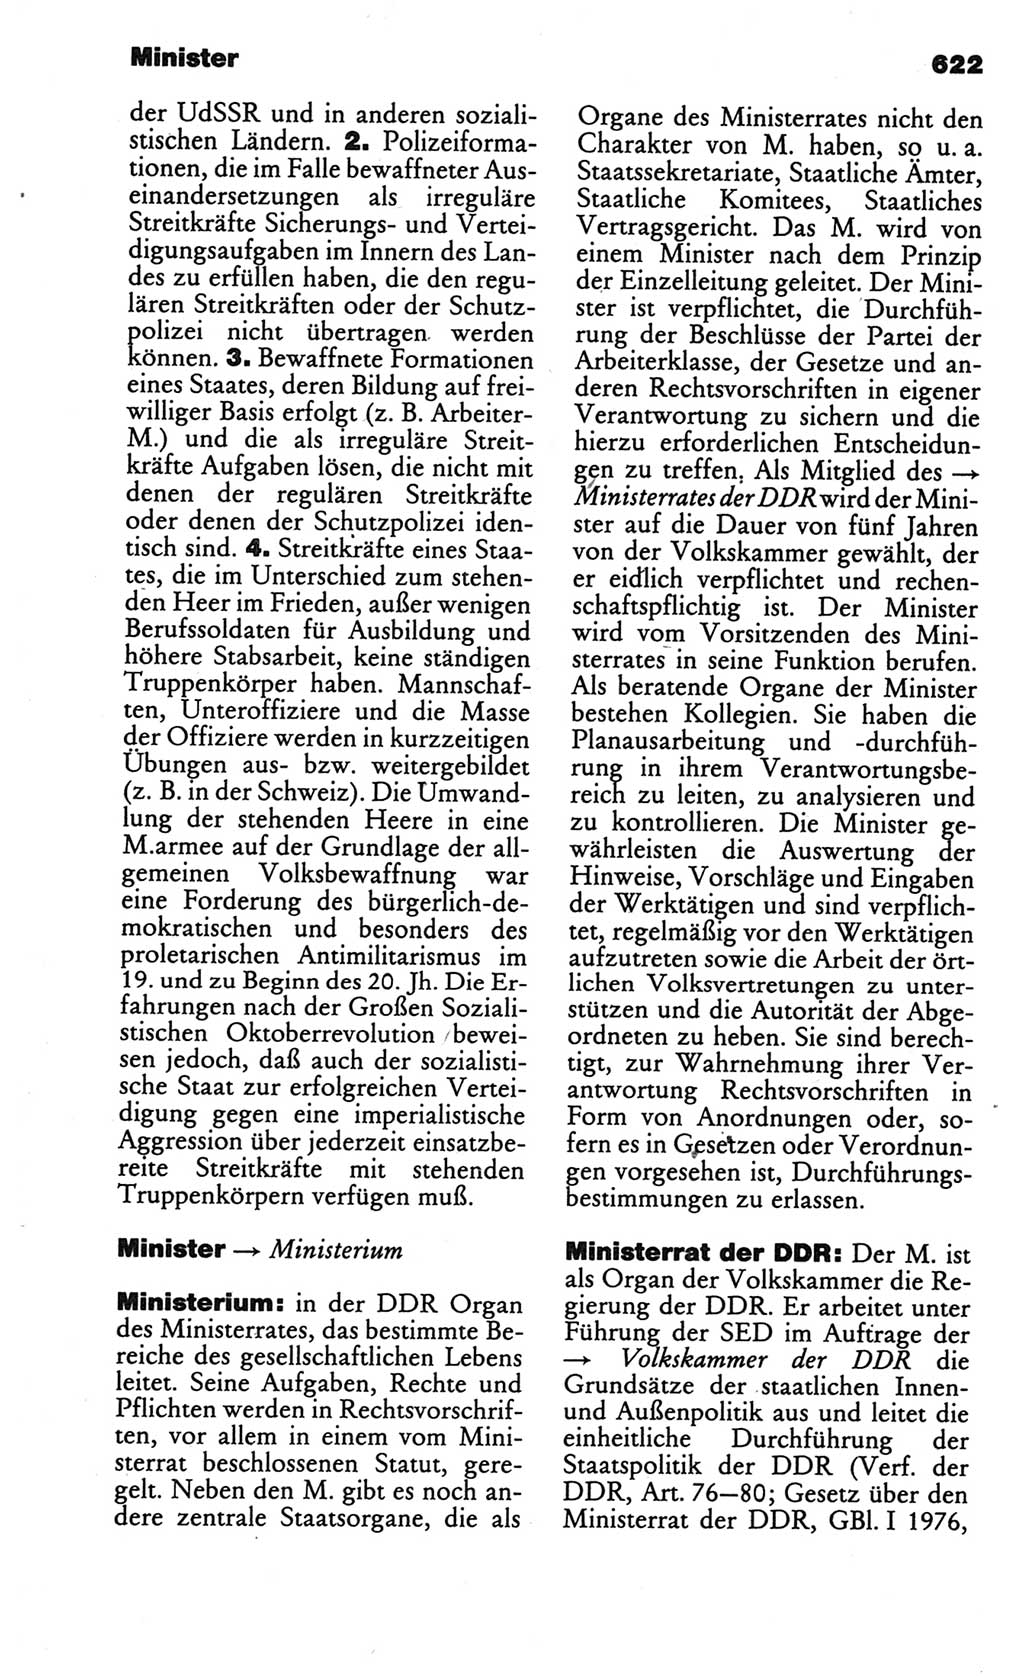 Kleines politisches Wörterbuch [Deutsche Demokratische Republik (DDR)] 1986, Seite 622 (Kl. pol. Wb. DDR 1986, S. 622)